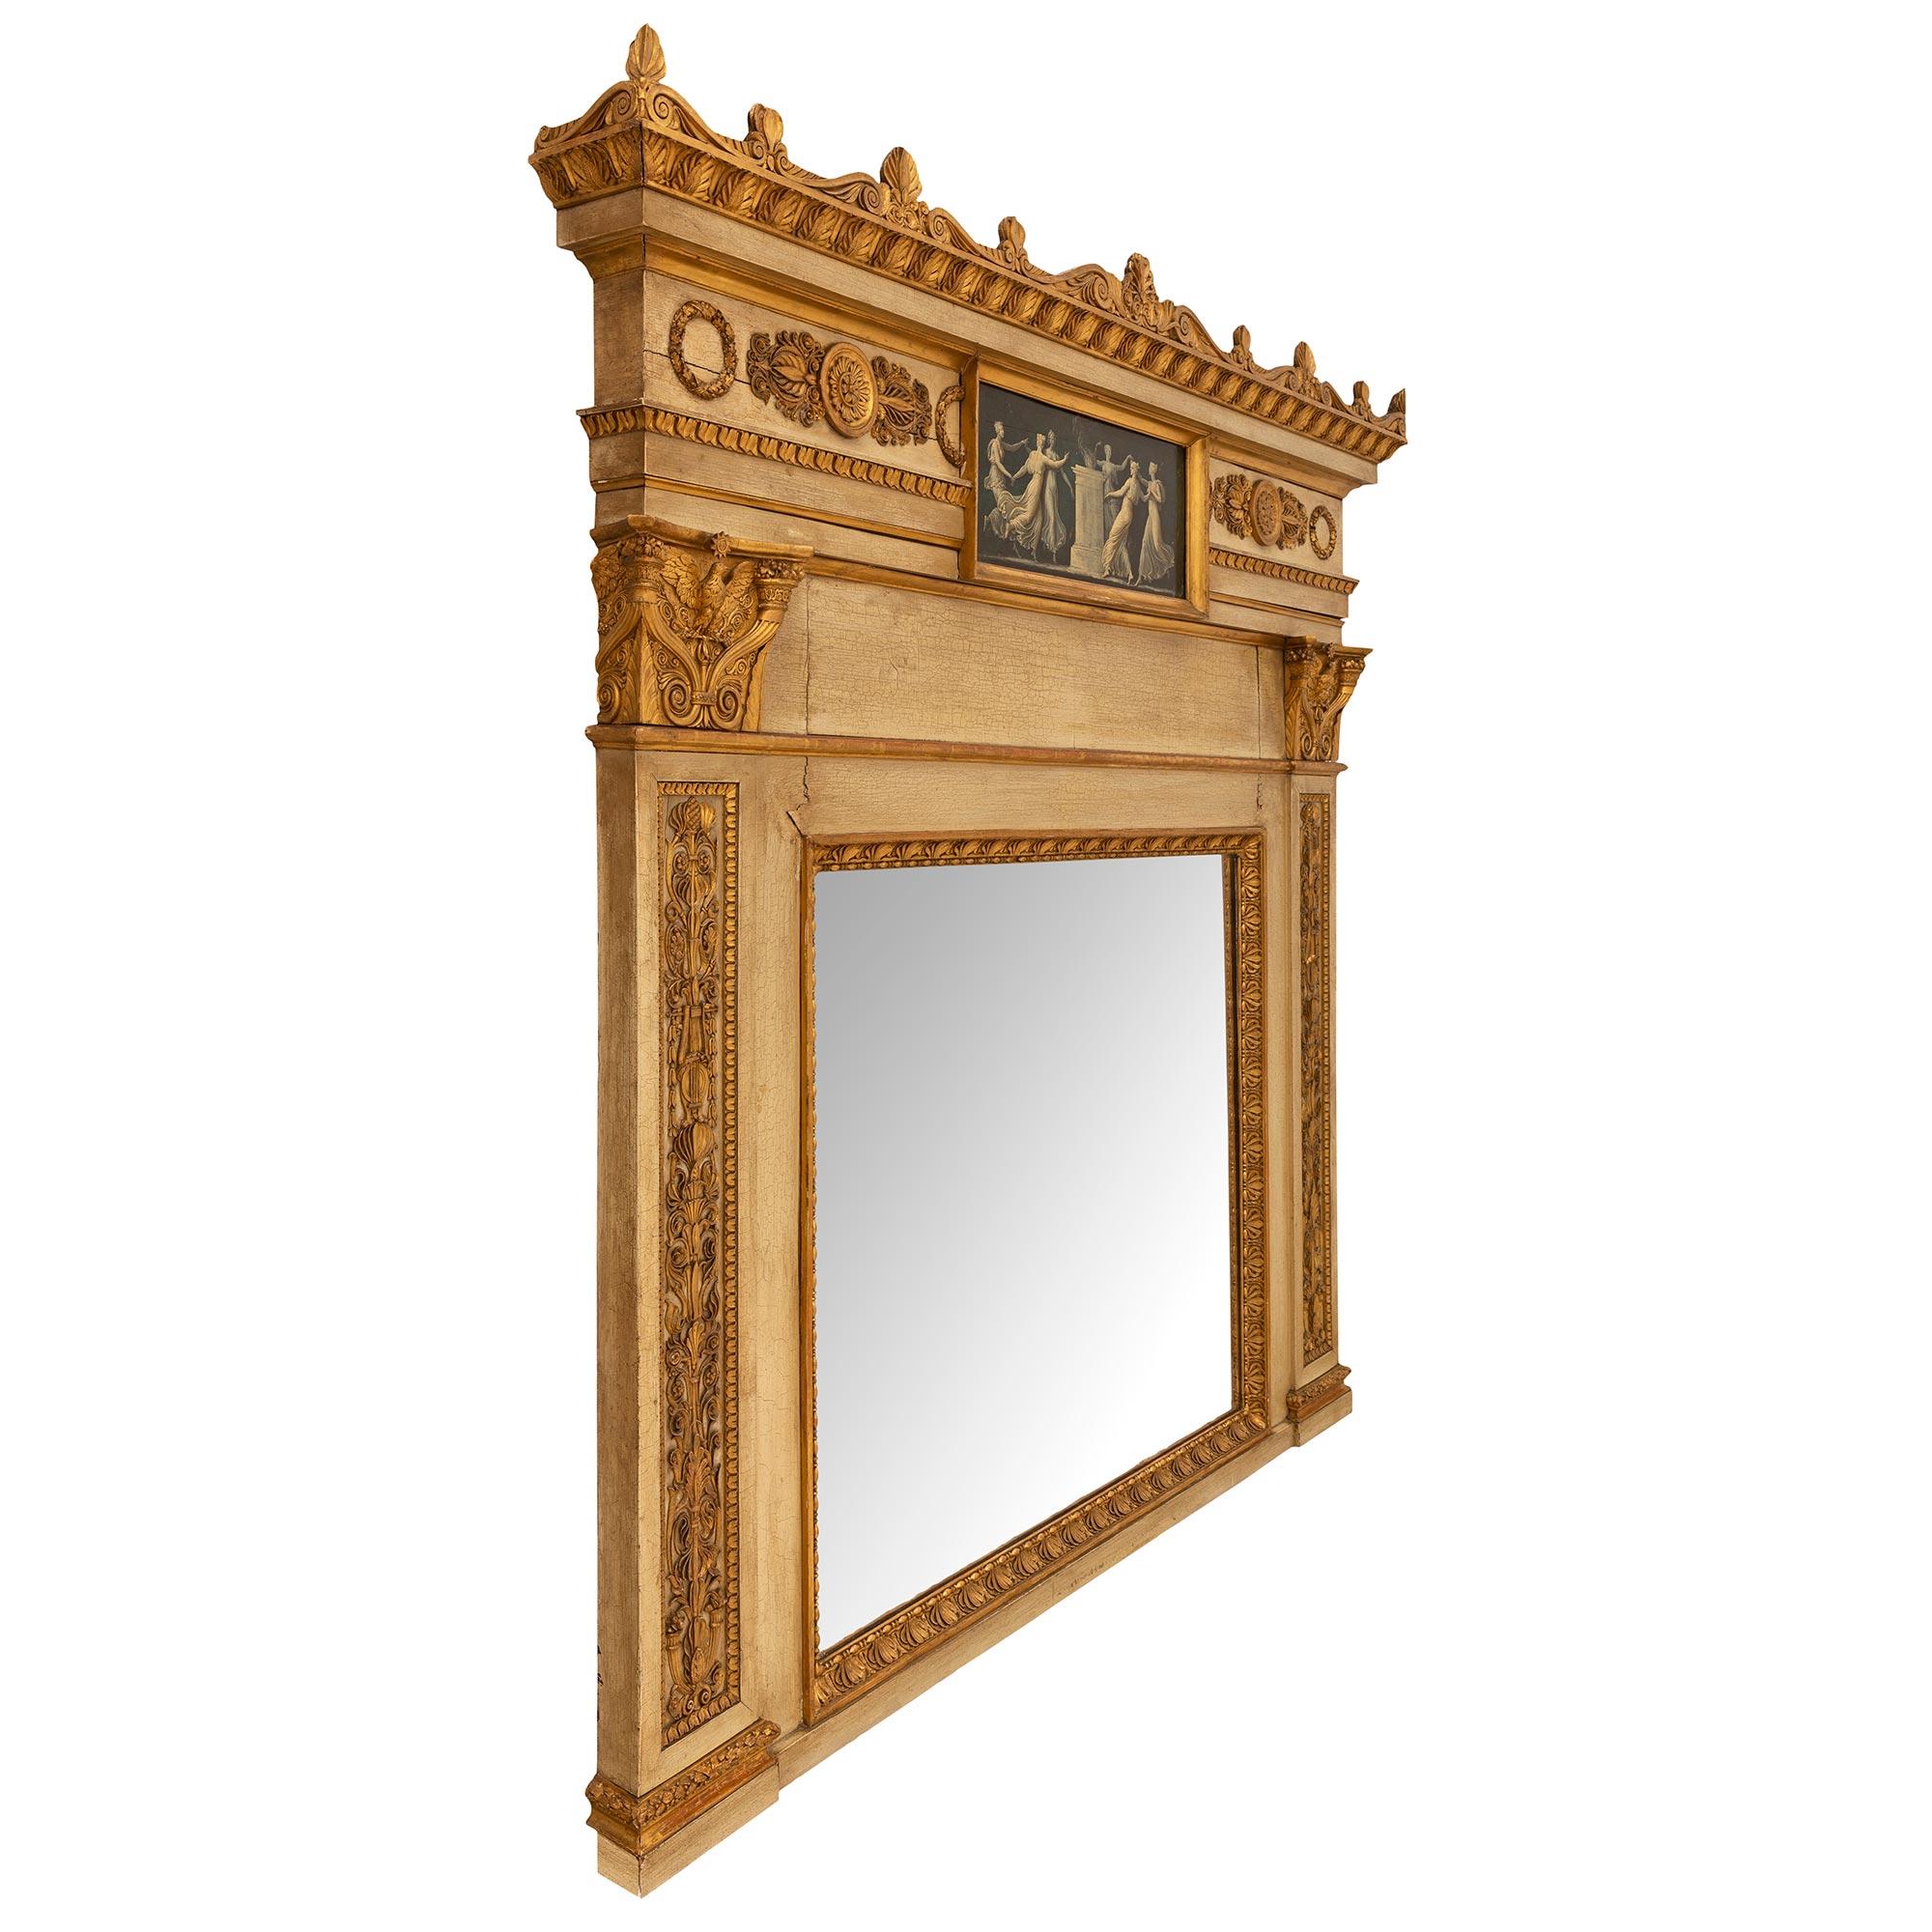 Un étonnant et très élégant miroir trumeau italien du 19ème siècle, de style néo-classique, en bois patiné et doré. Le trumeau conserve sa plaque de miroir d'origine enchâssée dans une palmette en bois doré richement sculptée et un bandeau tacheté.